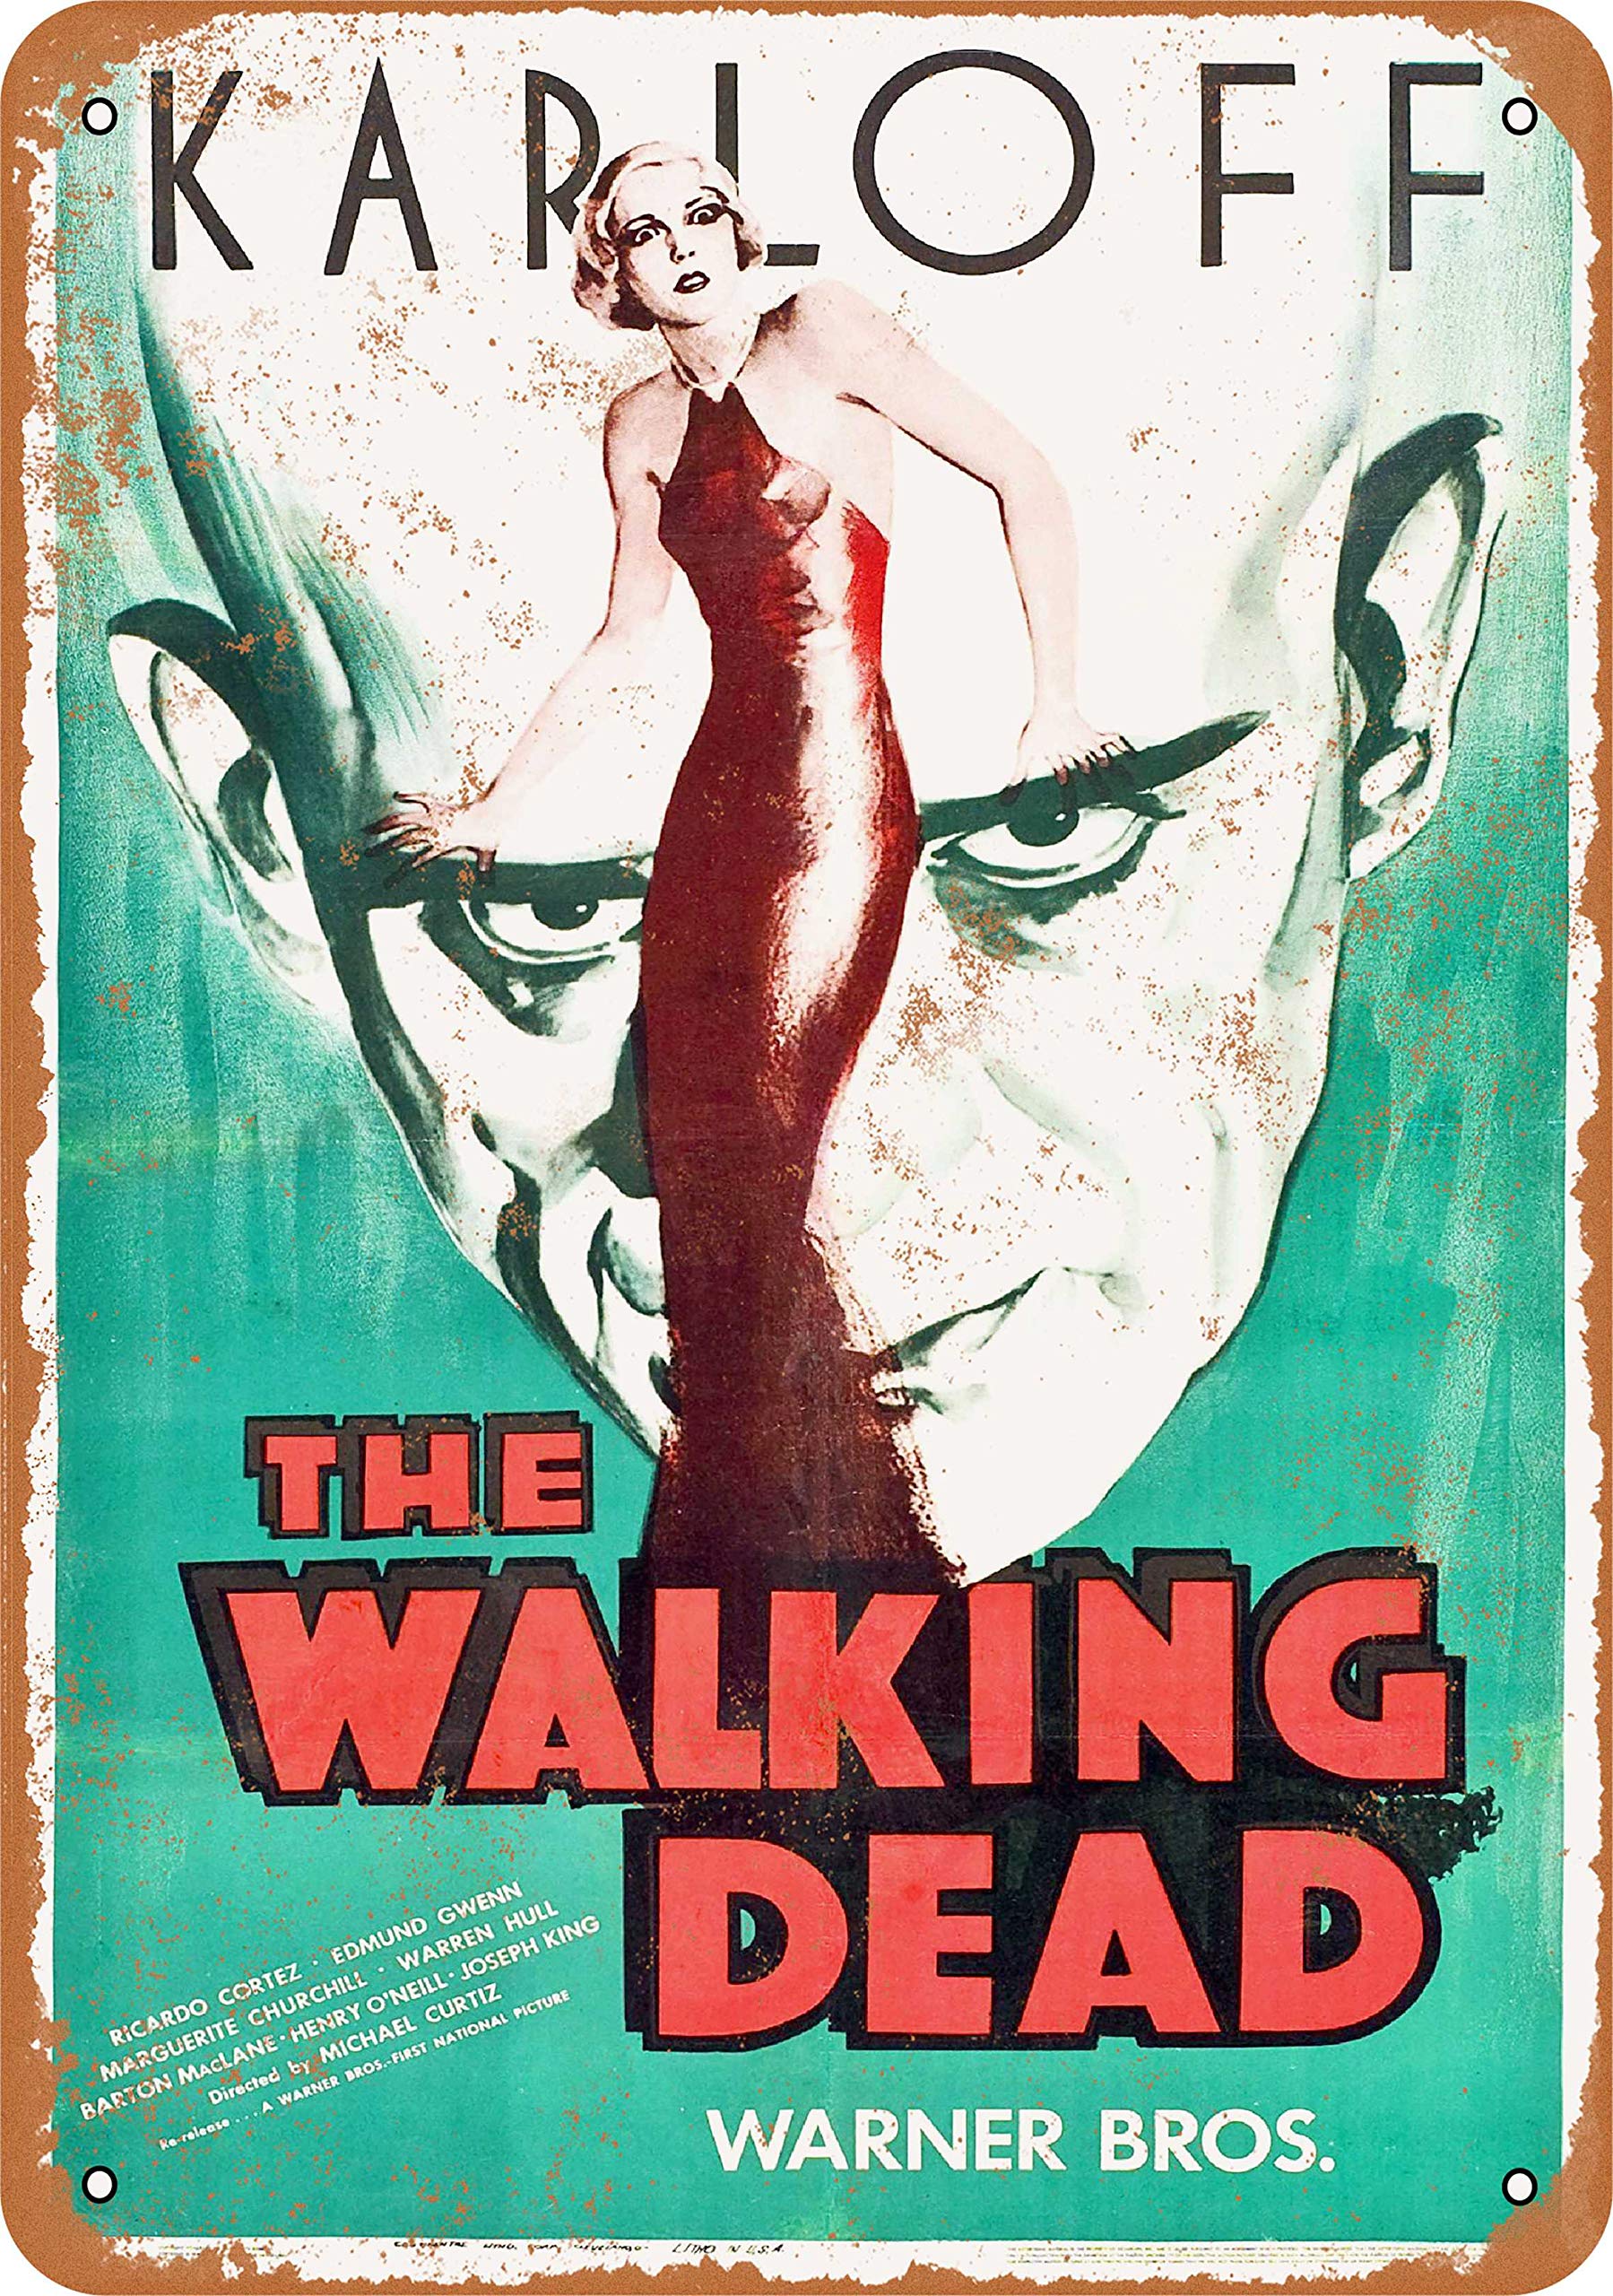 The Walking Dead (1936) starring Boris Karloff, Ricardo Cortez, Edmund Gwenn